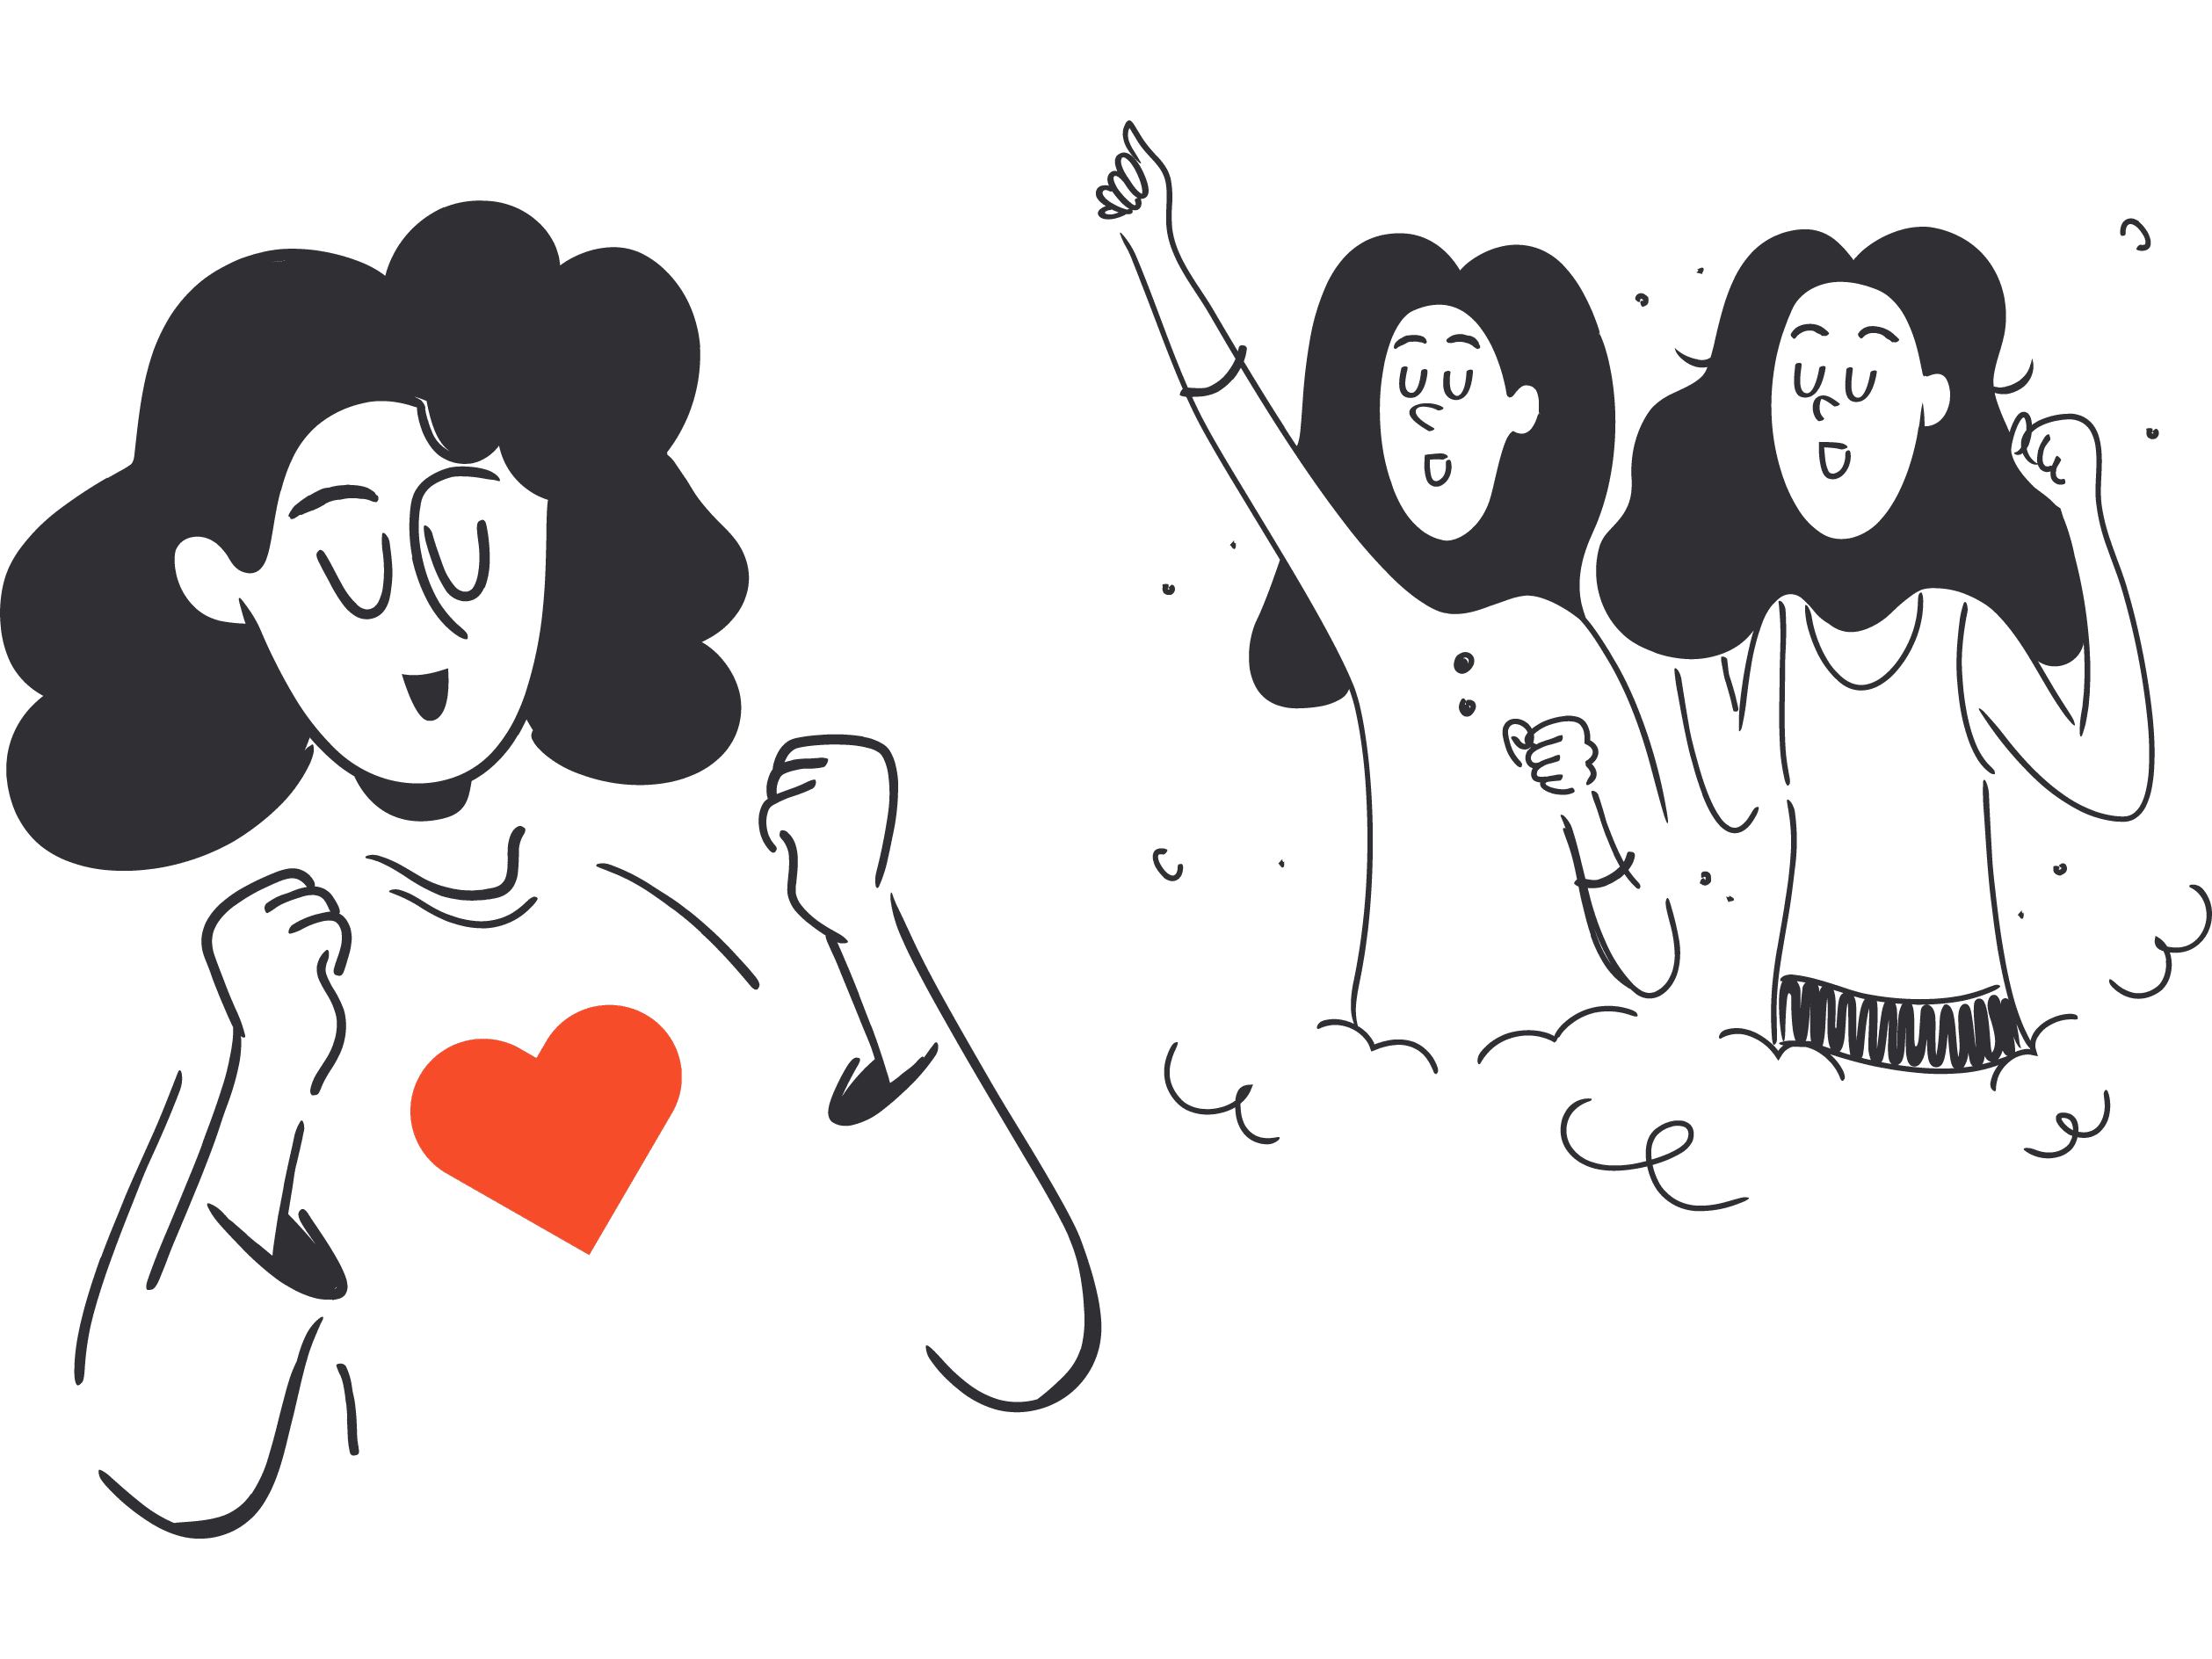 Illustrasjonsbilde som viser en jente med et stort hjerte på brystet. I bakgrunn står to andre jenter som engasjert hører på.